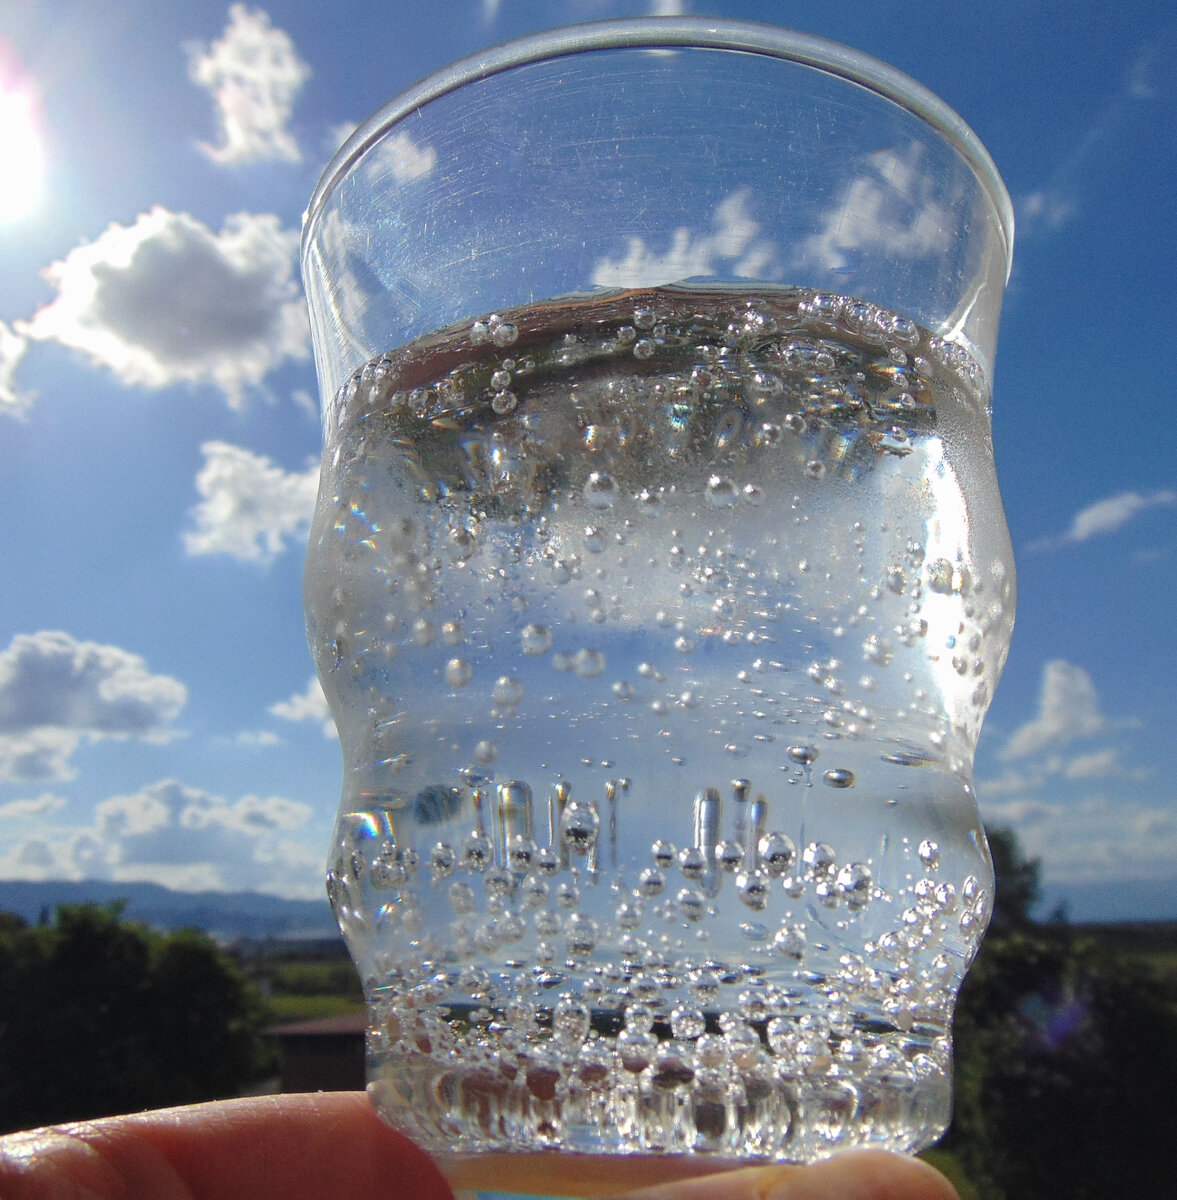 Вода всегда прозрачная. Пузырьки в стакане с маслом уксусом. Стакан с пузырьками воздуха внутри пластика. Бокалы с пузырьками при наличии шипят. Авито стеклянный стакан с пузырьками.